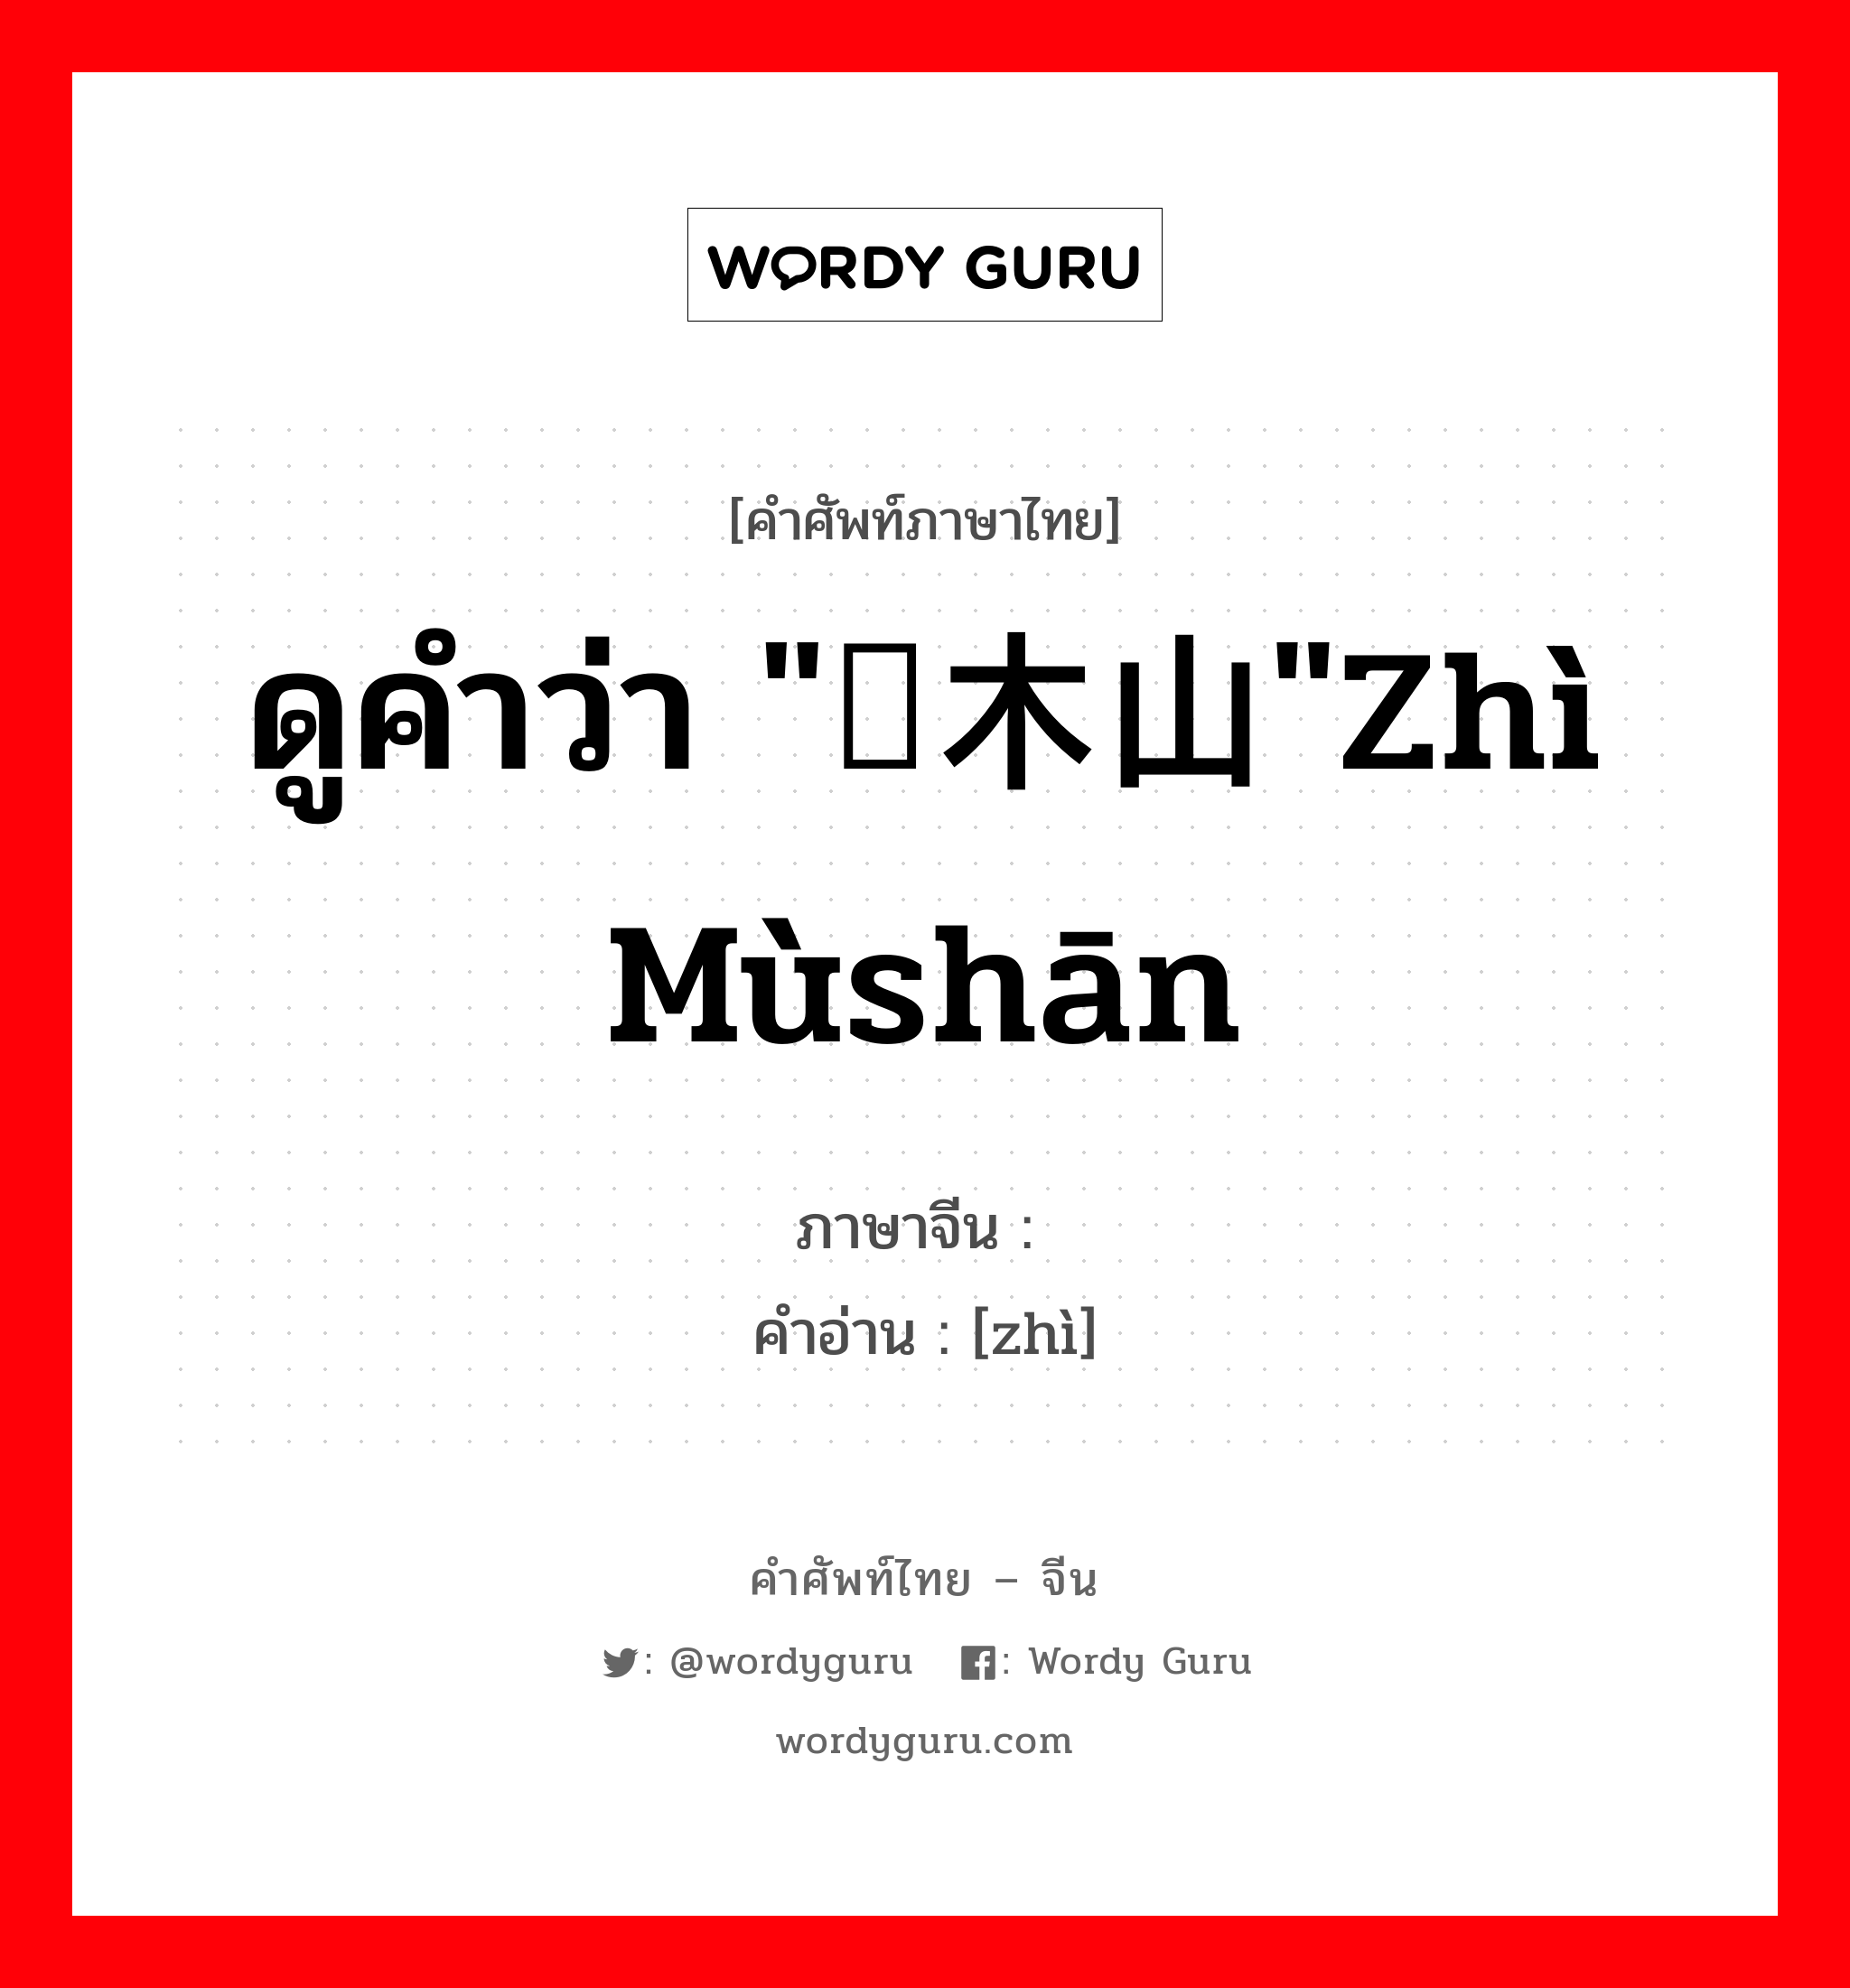 ดูคำว่า "梽木山"zhì mùshān ภาษาจีนคืออะไร, คำศัพท์ภาษาไทย - จีน ดูคำว่า "梽木山"zhì mùshān ภาษาจีน 梽 คำอ่าน [zhì]